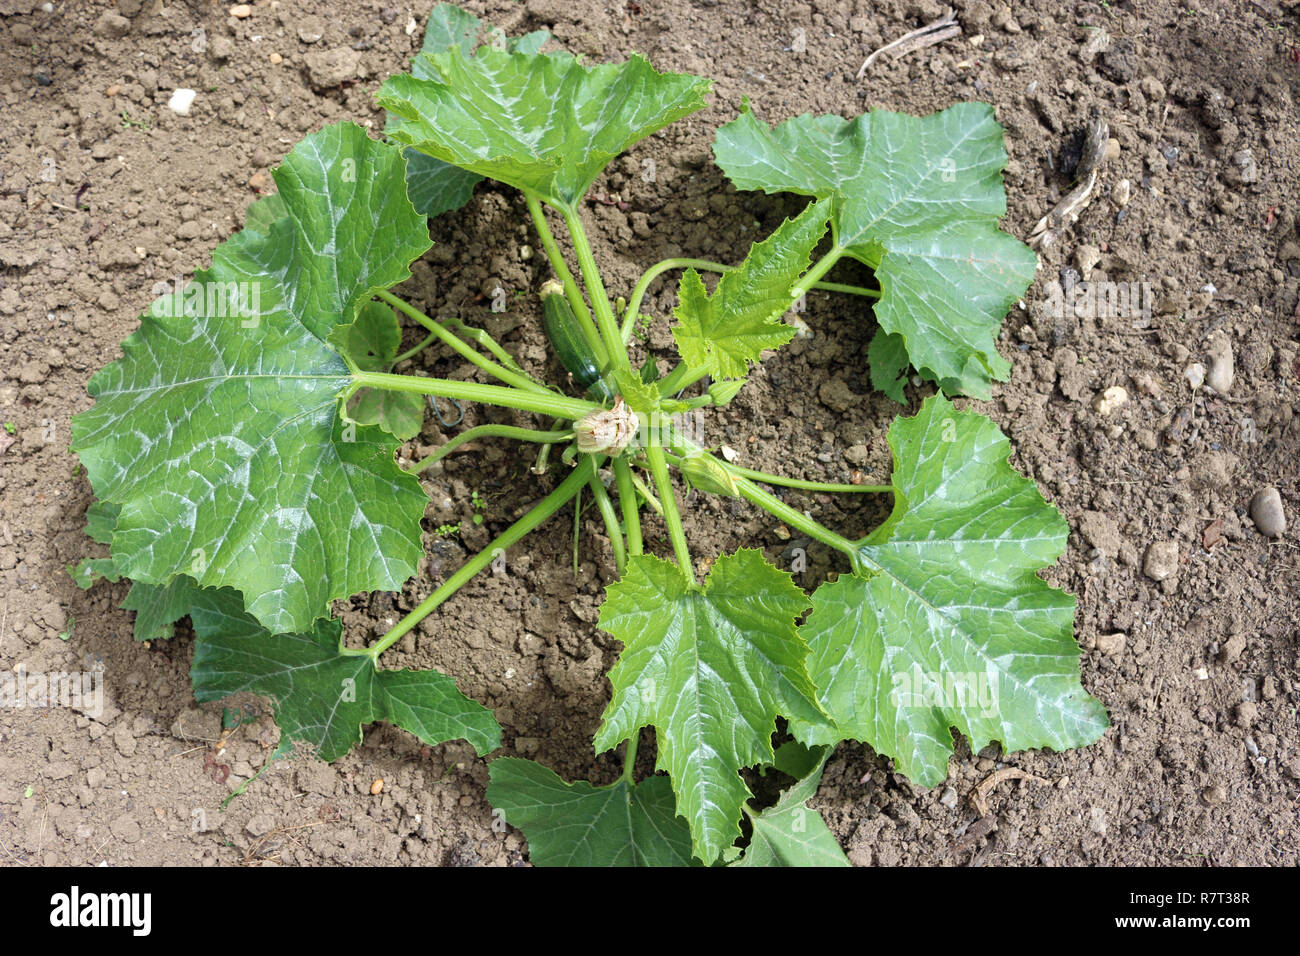 La zucchina o le zucchine (Cucurbita pepo) impianto bene su terreno coltivato con una piccola crescita verde zucchina sull'impianto. Foto Stock